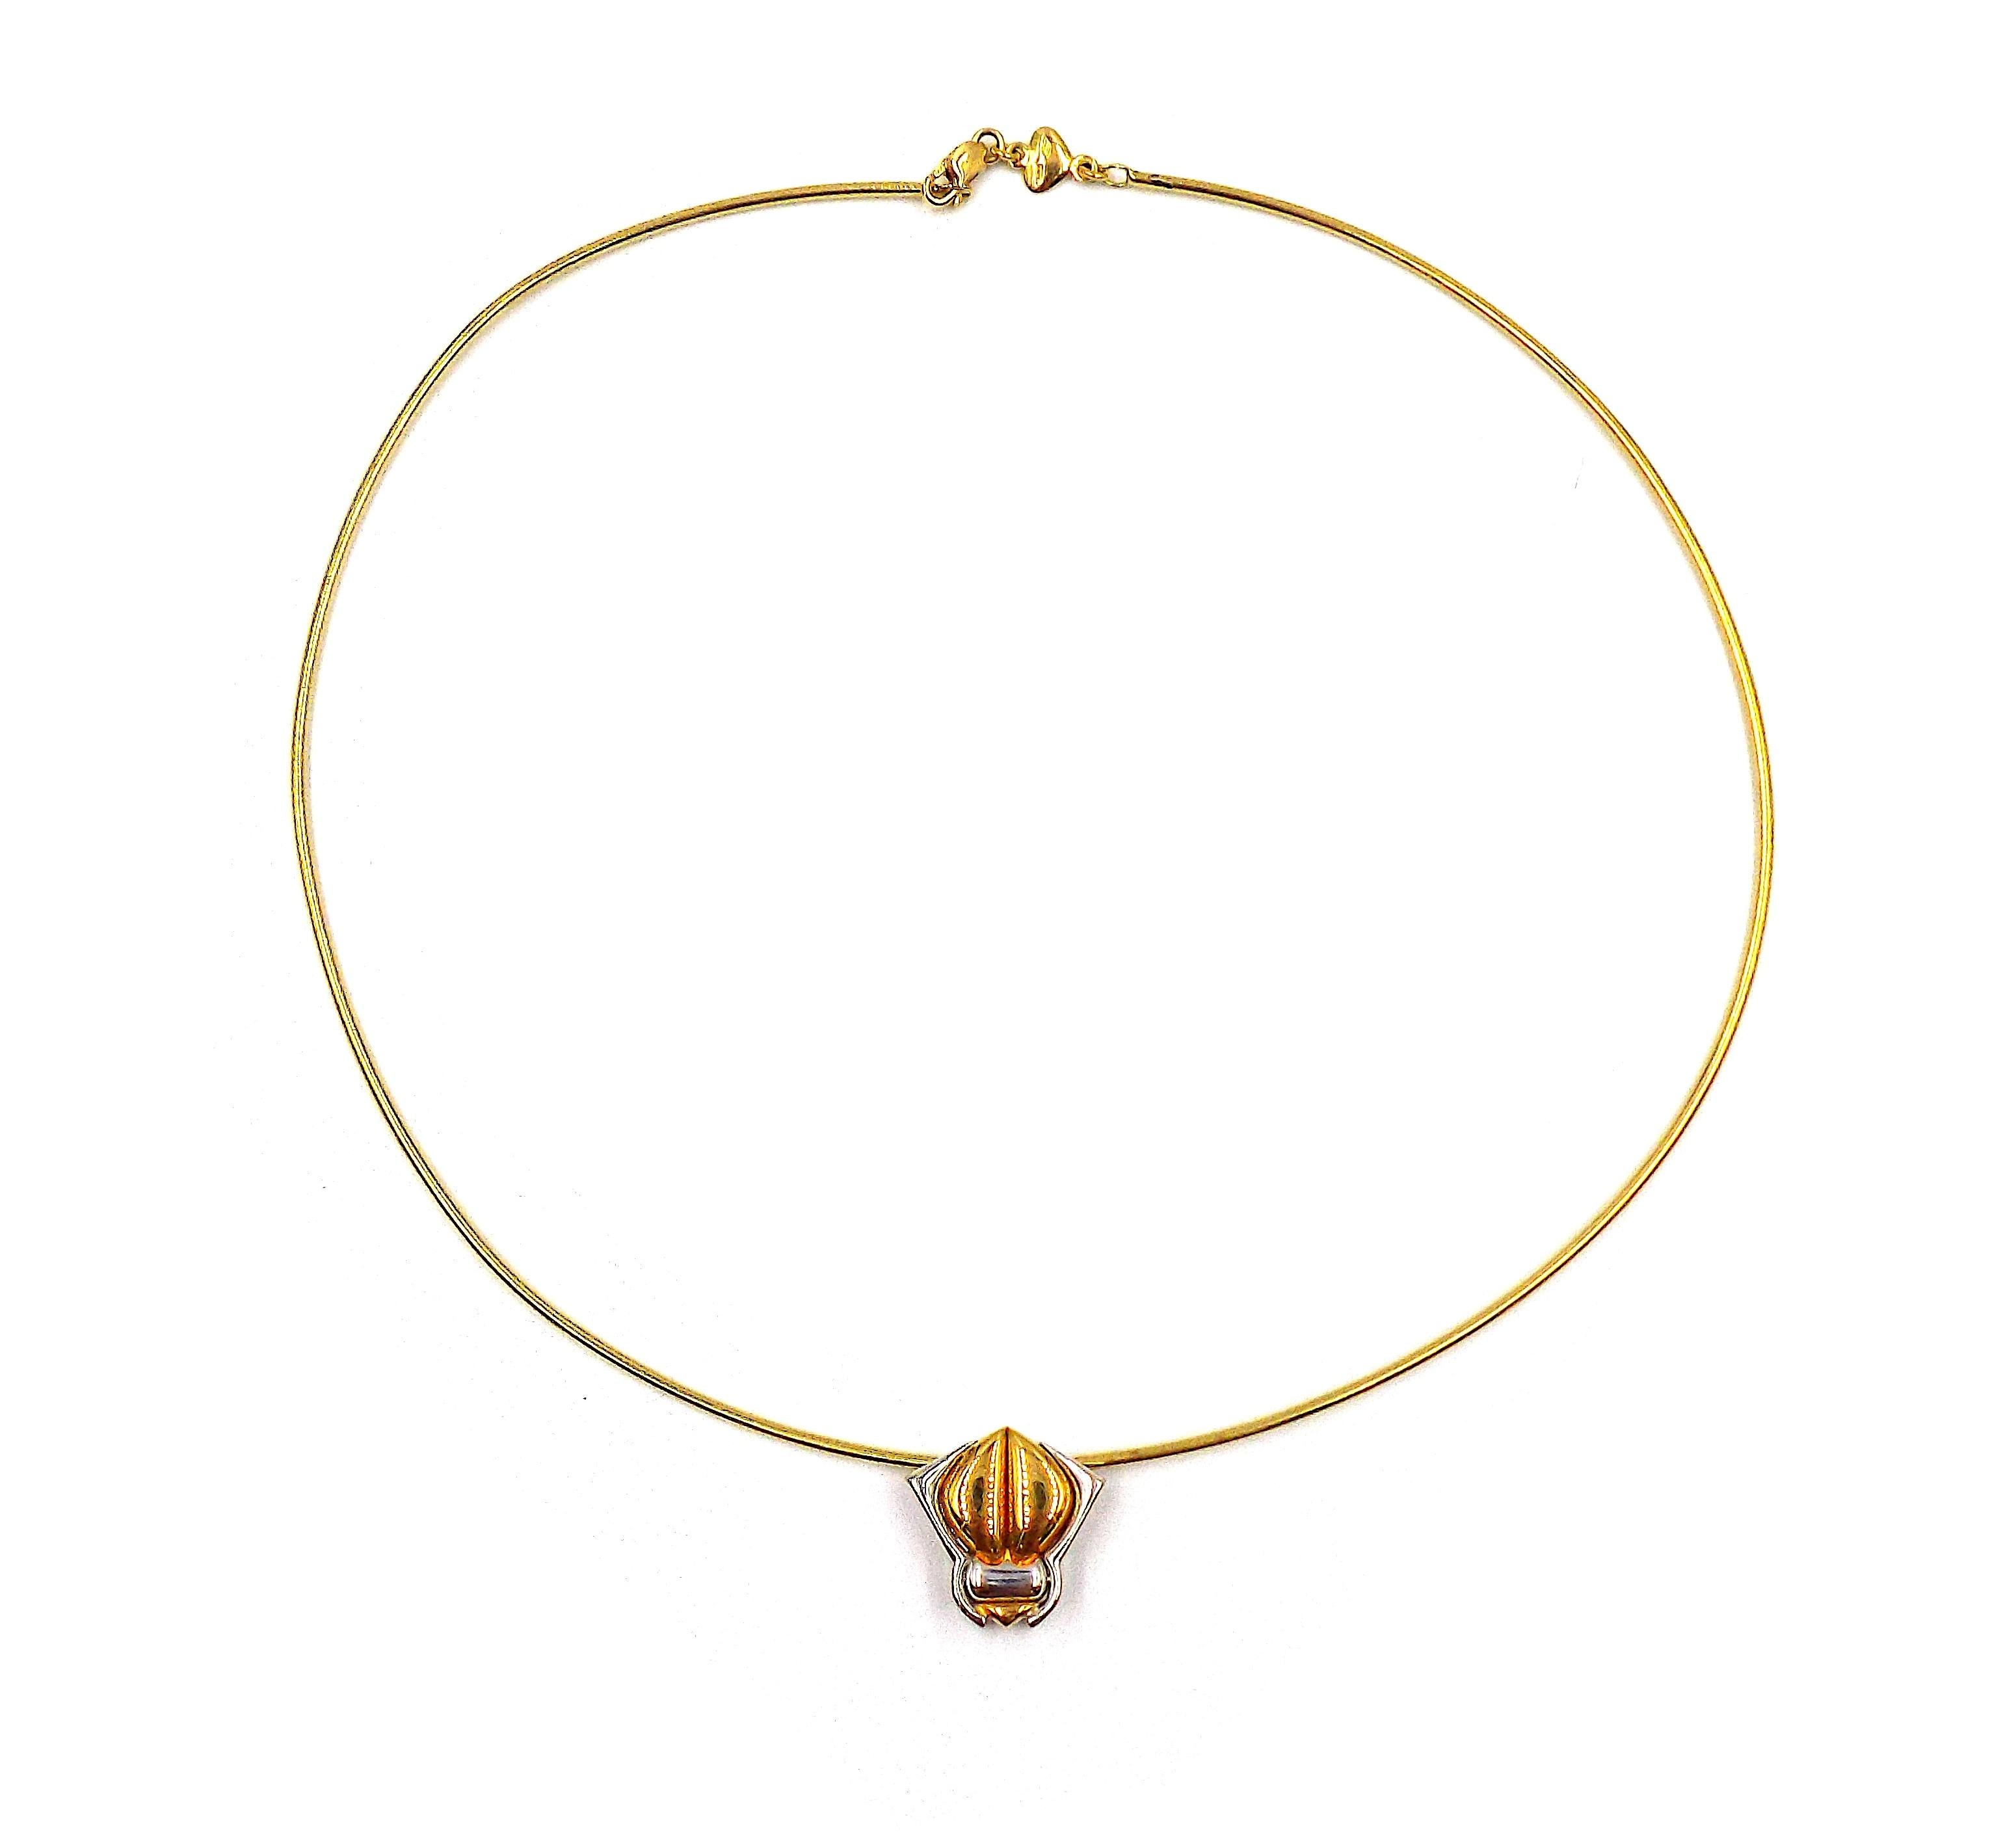 Eine niedliche Halskette mit einem käferförmigen Anhänger an einem Halsband. Signiert Marina B, nummeriert, mit 750, mit italienischen Registriermarken. Gewicht ist ap. 8.4dwt, Drahtlänge ist ap. 16